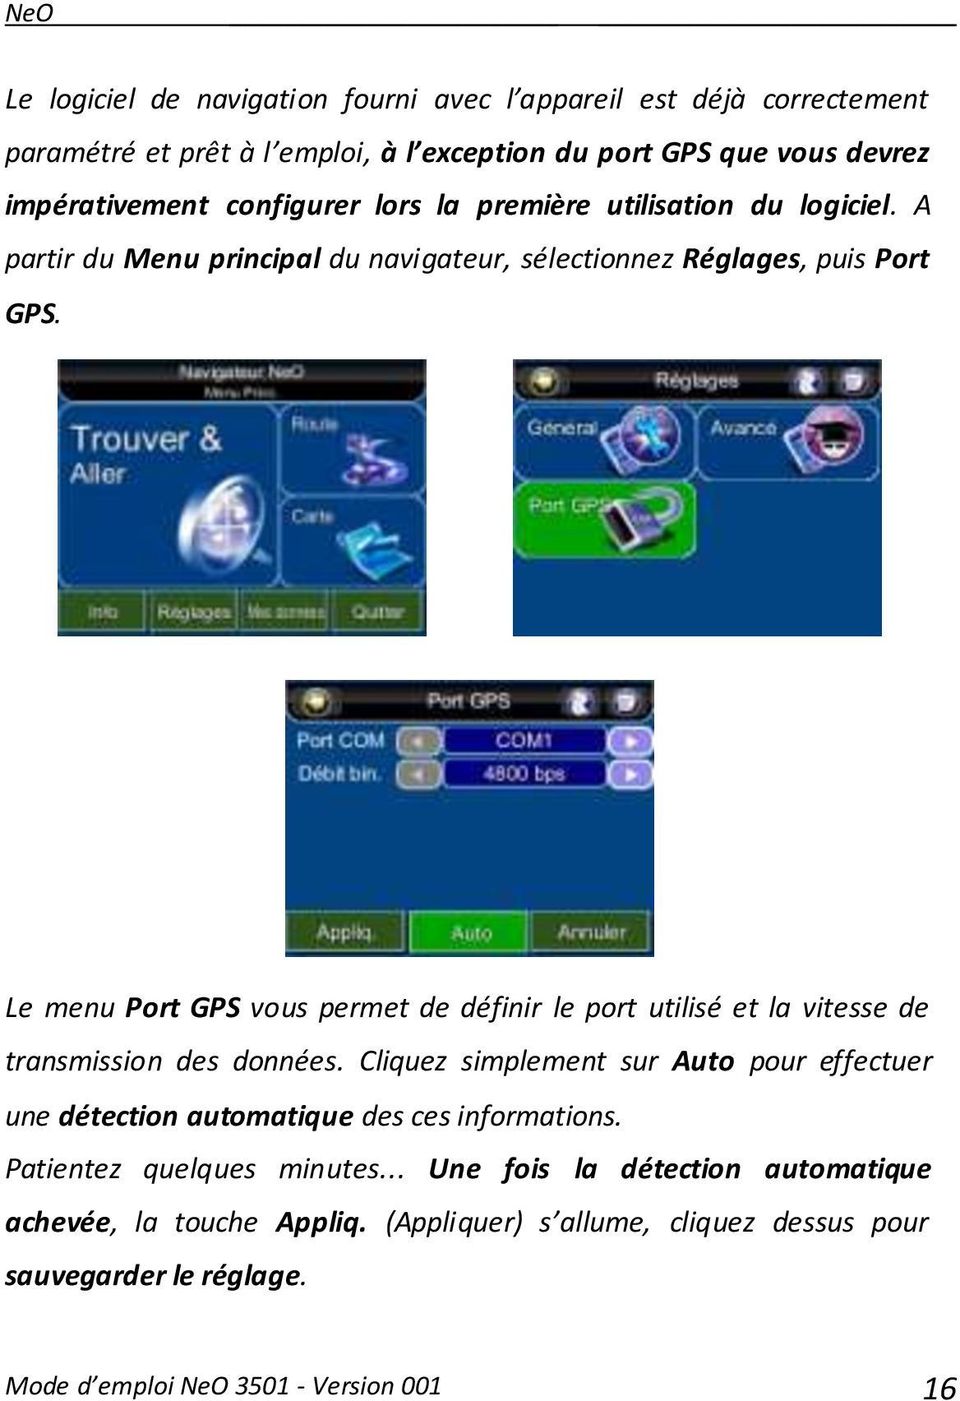 Le menu Port GPS vous permet de définir le port utilisé et la vitesse de transmission des données.